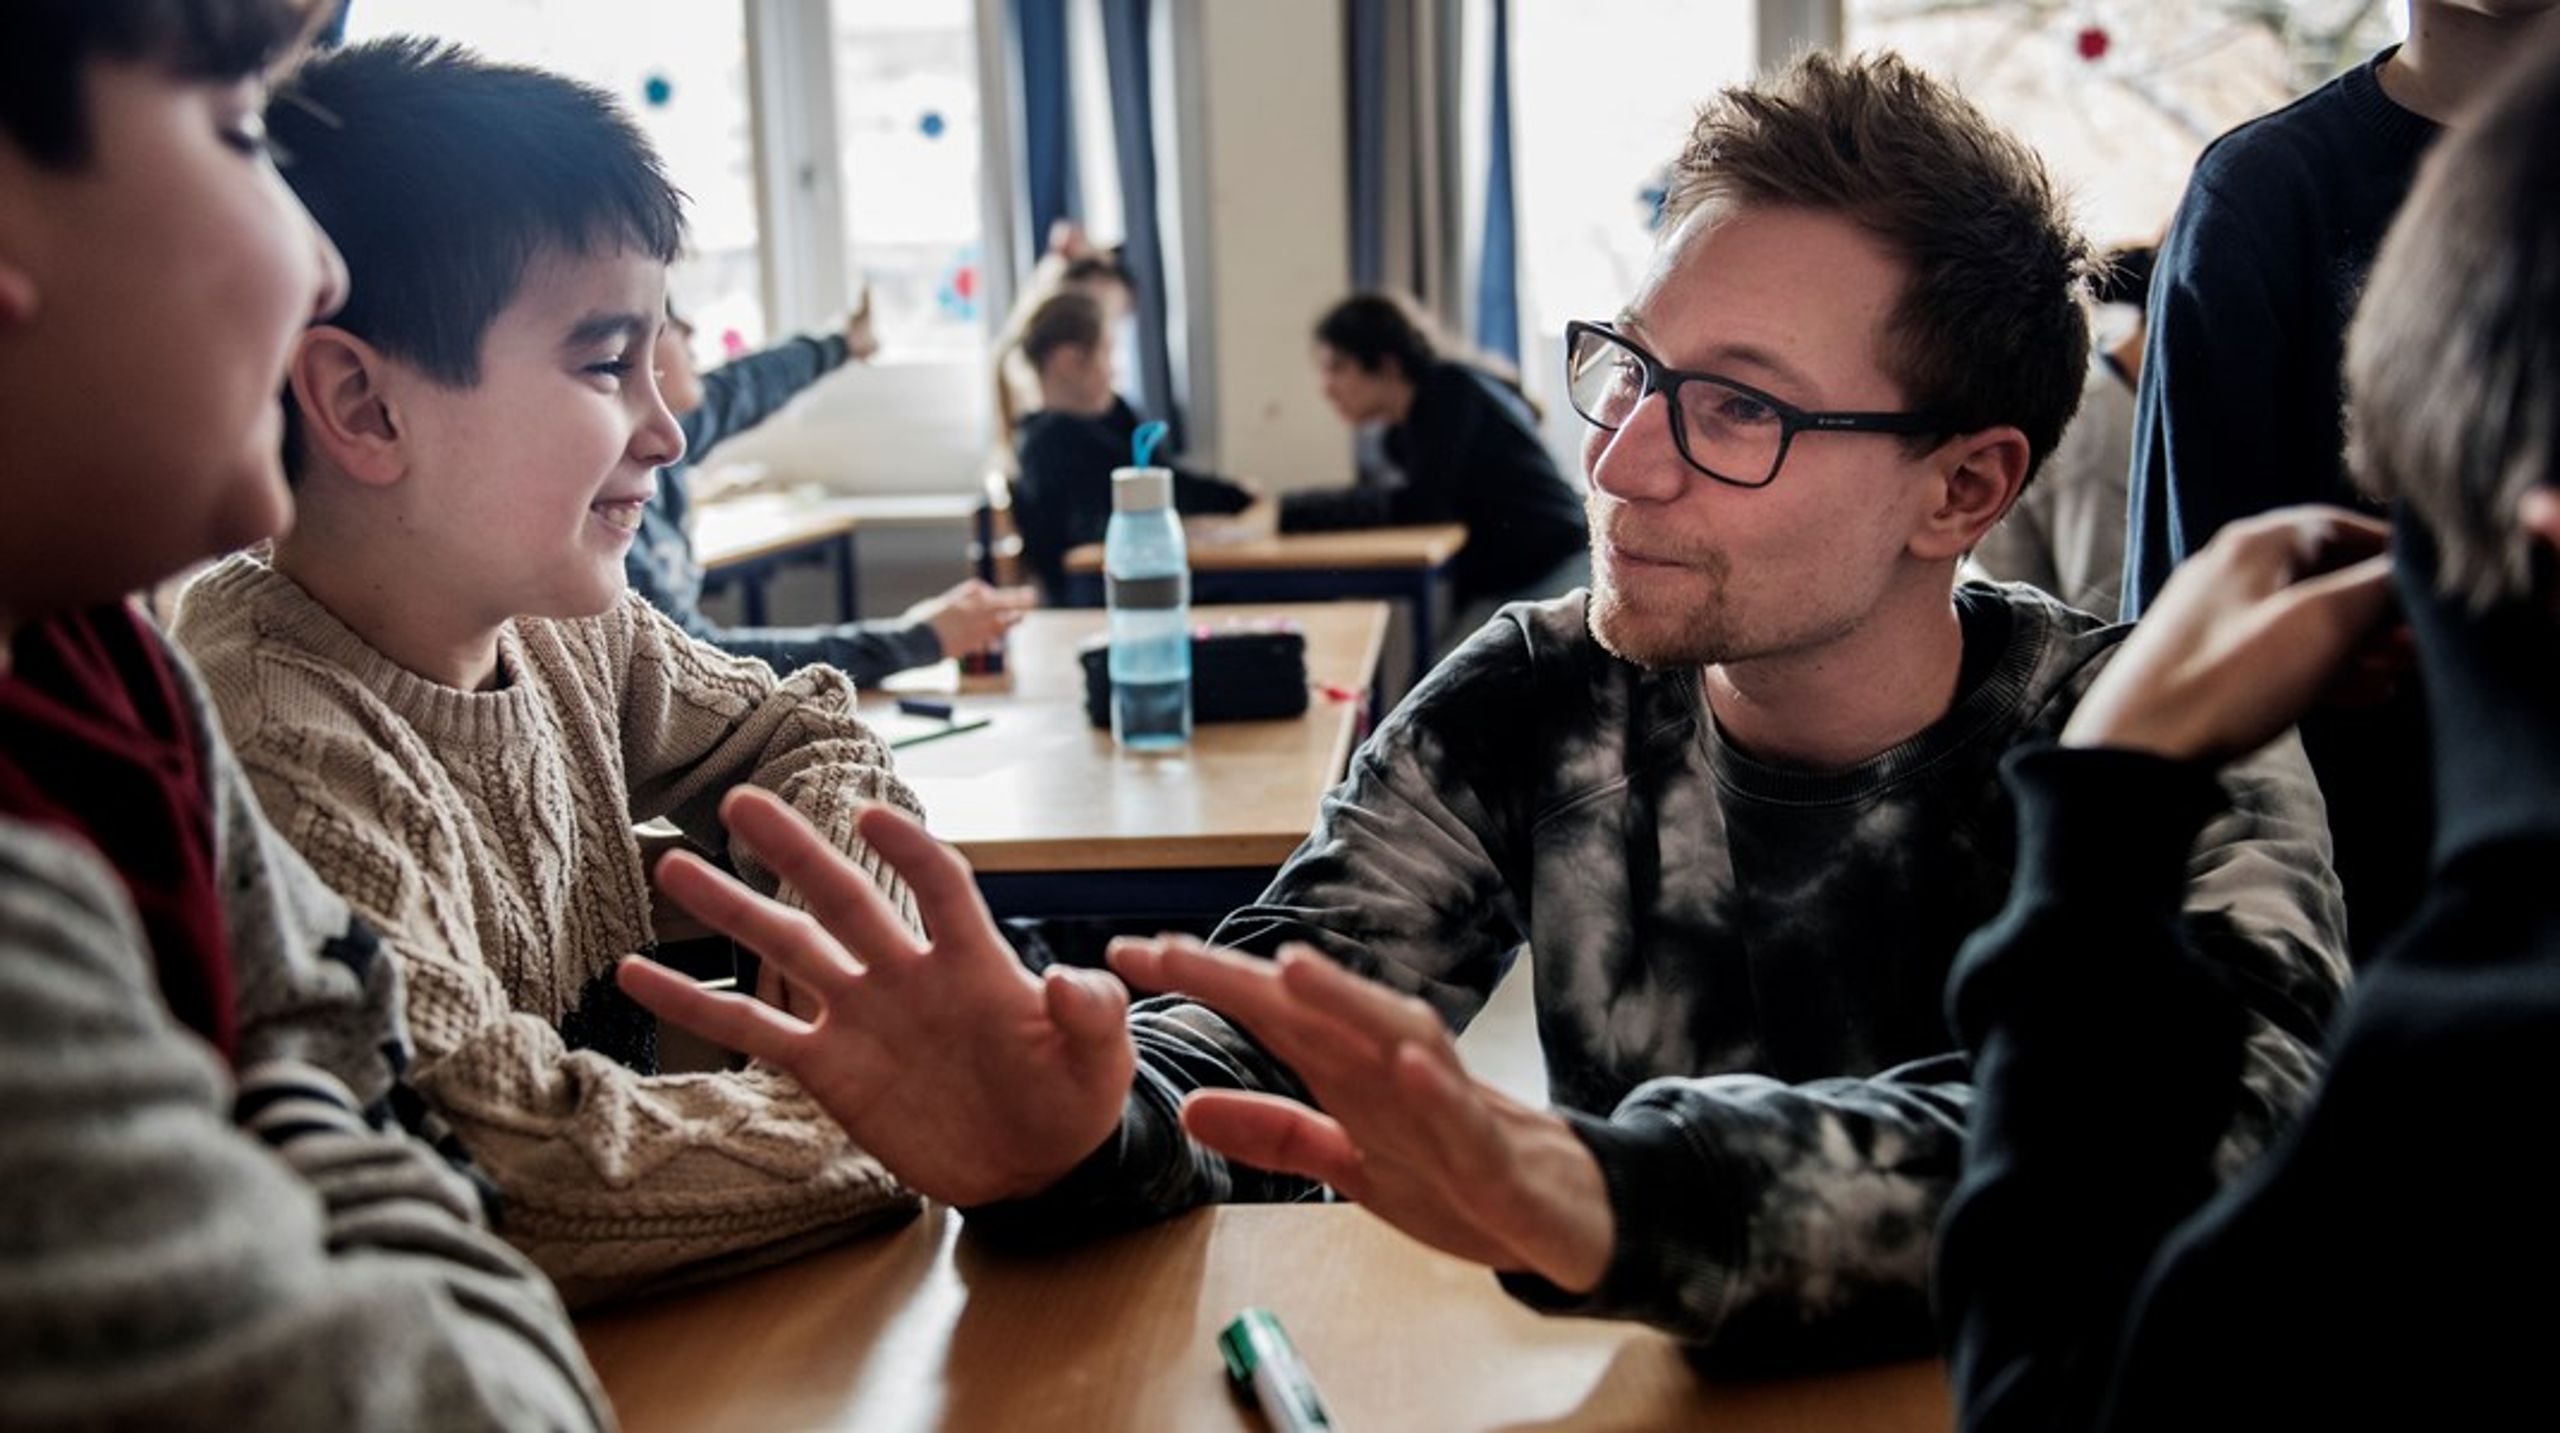 Esther Vyff skal fremover være med til at sætte retningen for foreningen Teach First Danmark, som udvikler og støtter lærere, der er fastbesluttet på at give alle børn og unge&nbsp;en uddannelse uanset social baggrund.&nbsp;